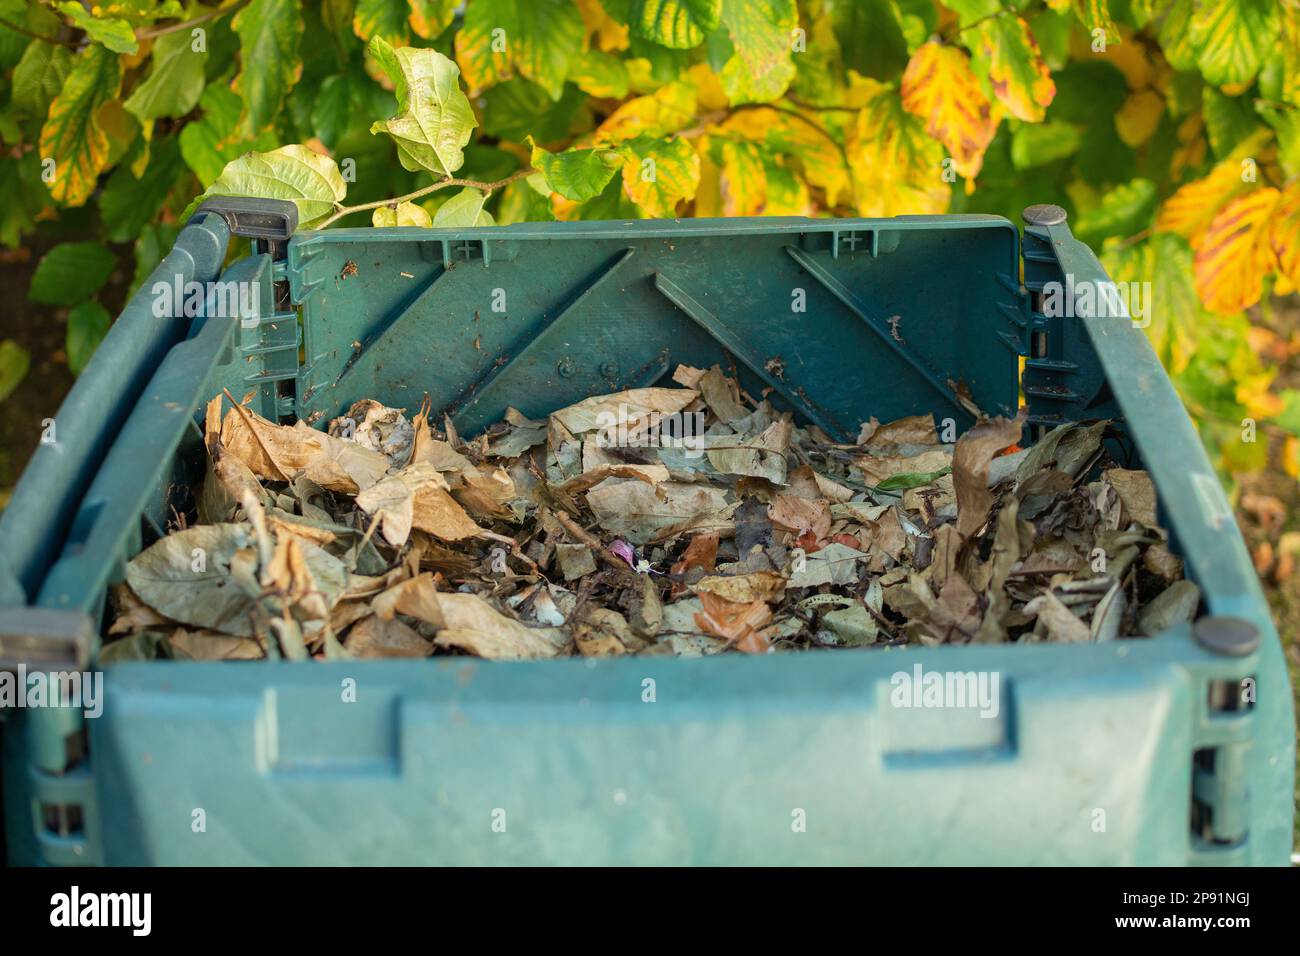 Compost-Behälter für den Außenbereich mit offenem Deckel, um den organischen Abfall mit Blättern zu bedecken. Der Kompost wird in einen Garten gestellt, um organischen Abfall zu recyceln Stockfoto